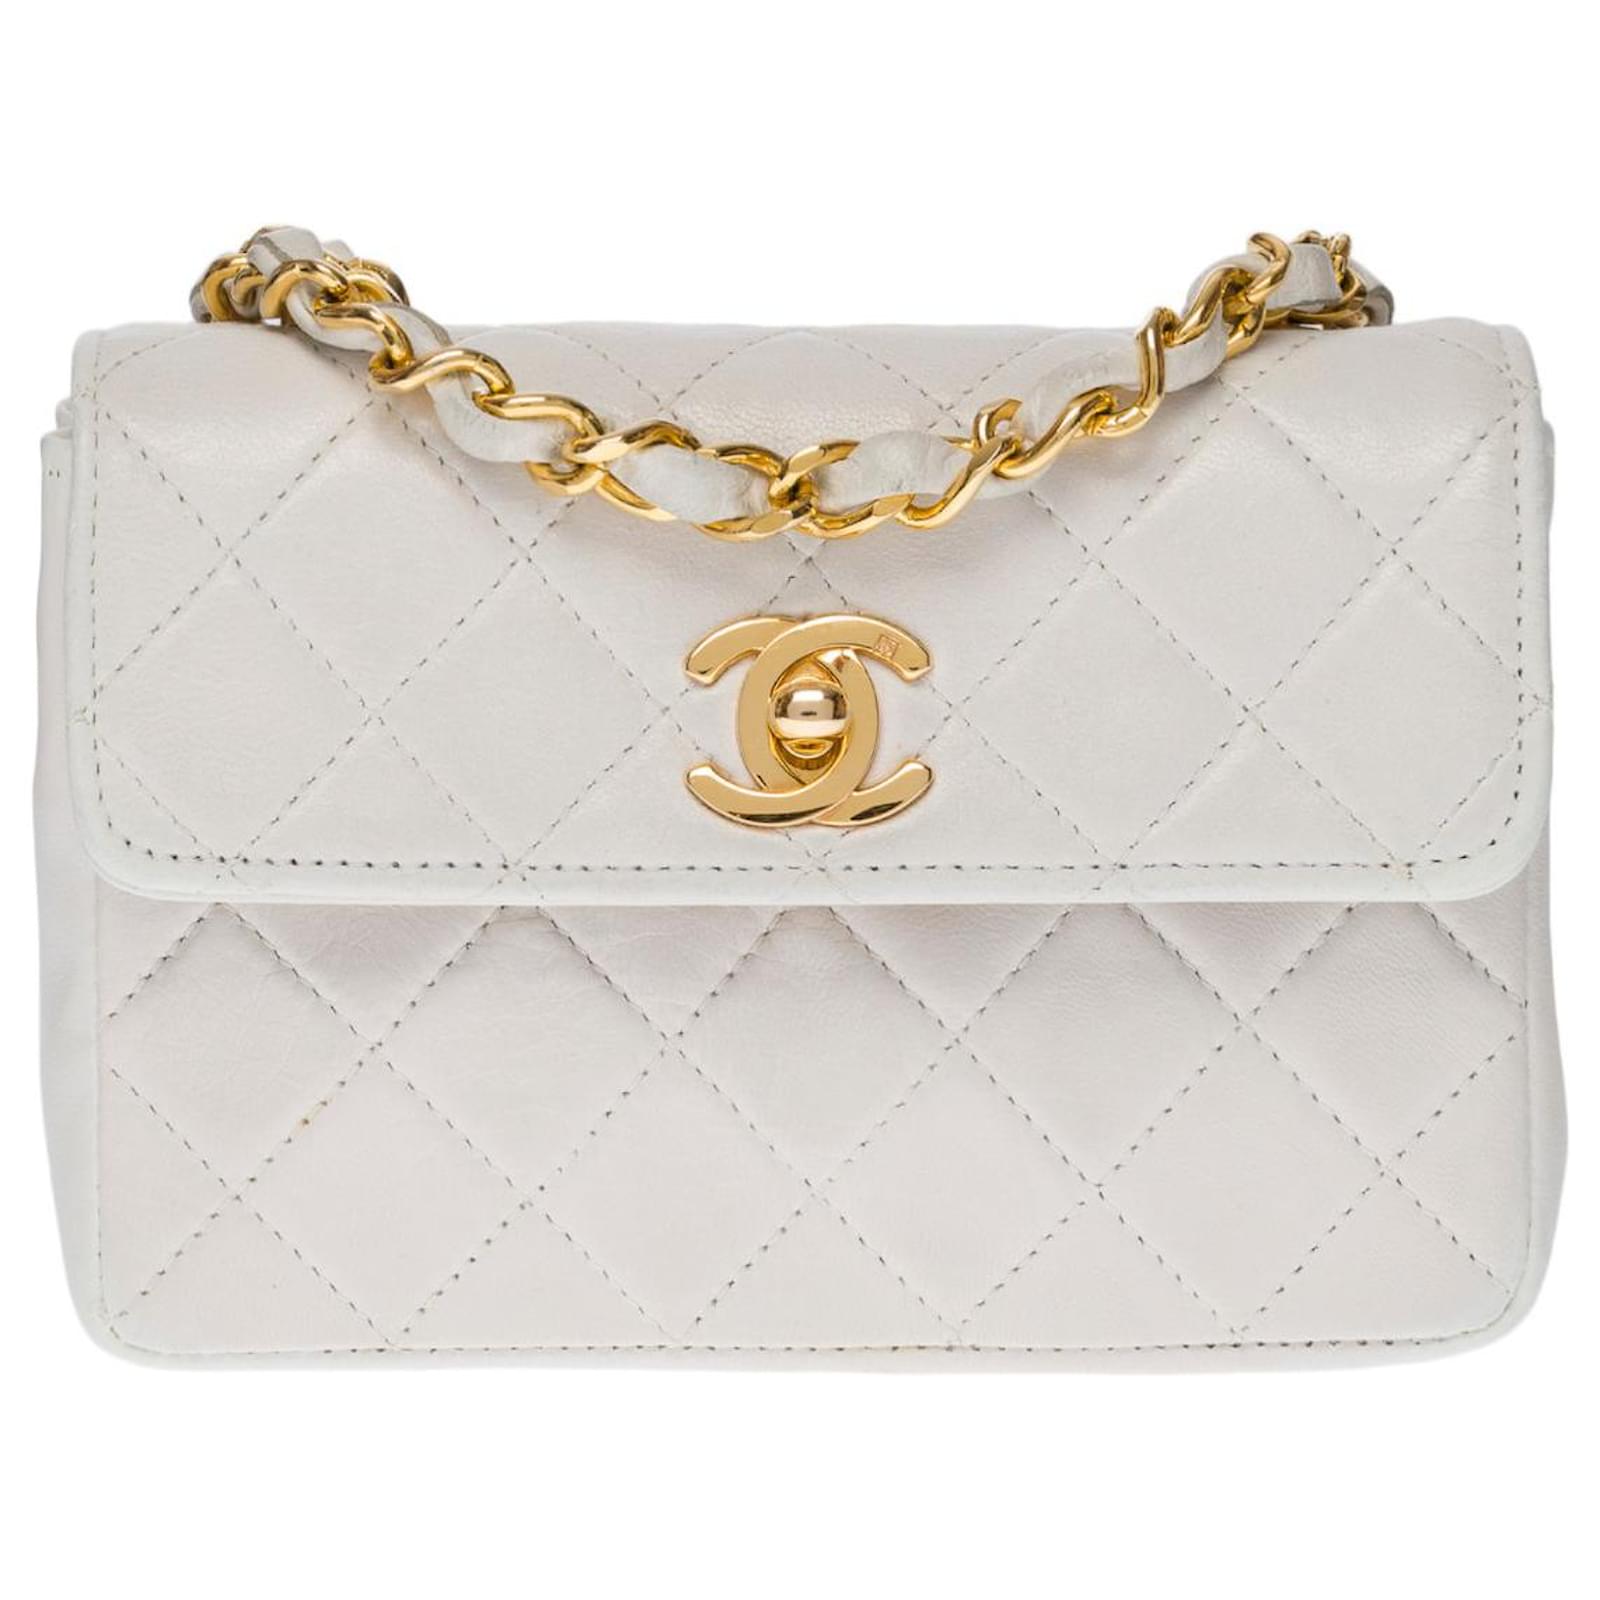 Superb Chanel Mini Classic Flap bag shoulder bag in white quilted leather,  garniture en métal doré